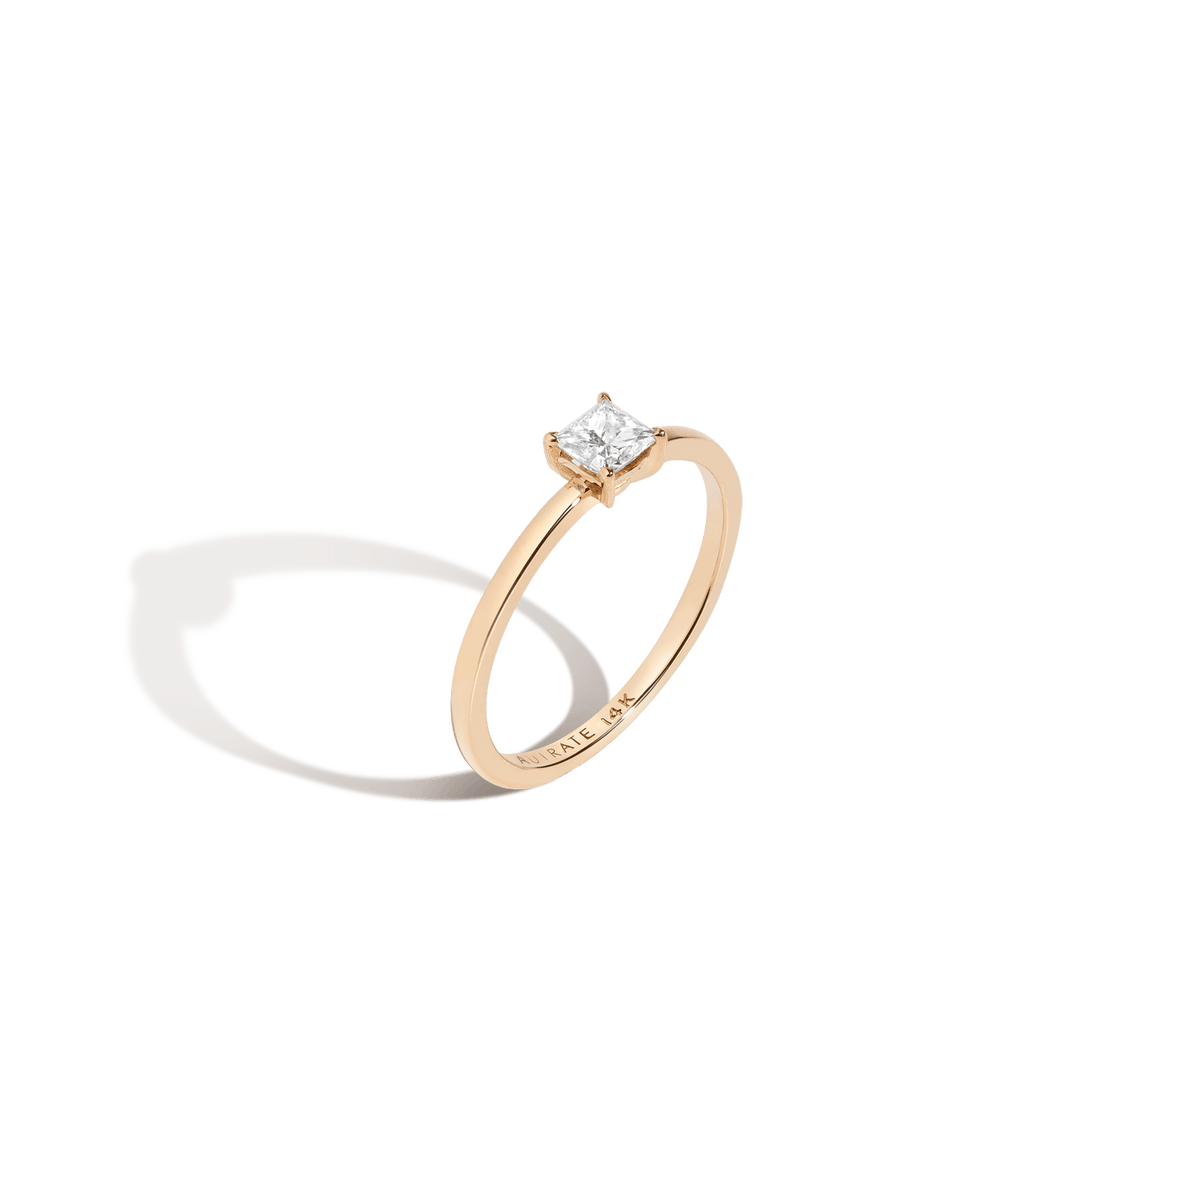 Flower Diamond Engagement Ring In Moonlit Design